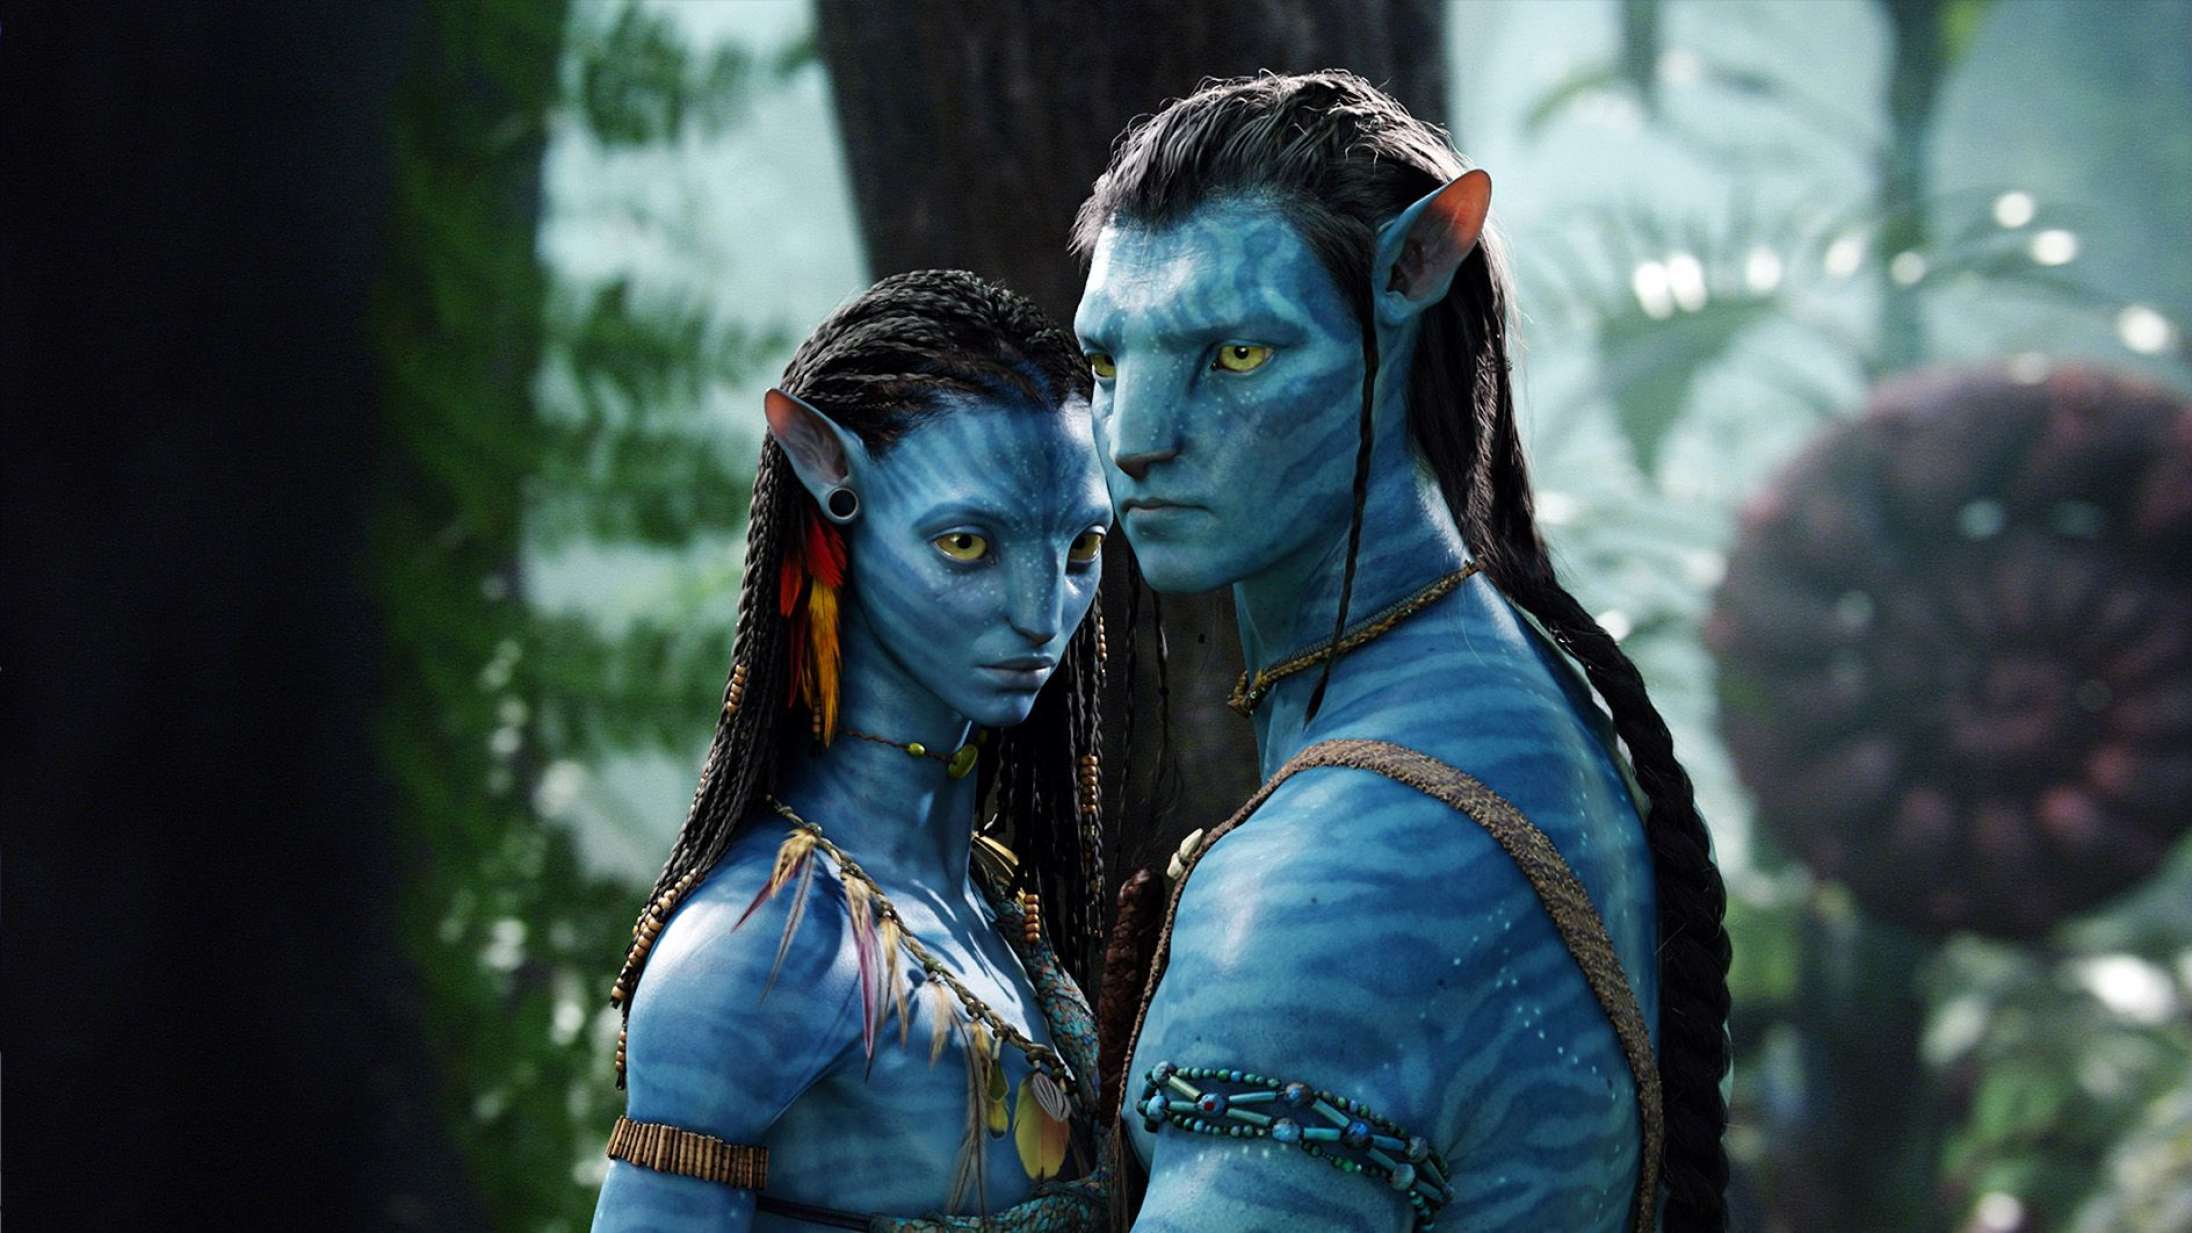 James Cameron ville have det fint med kun at lave ‘Avatar’-film fra nu af